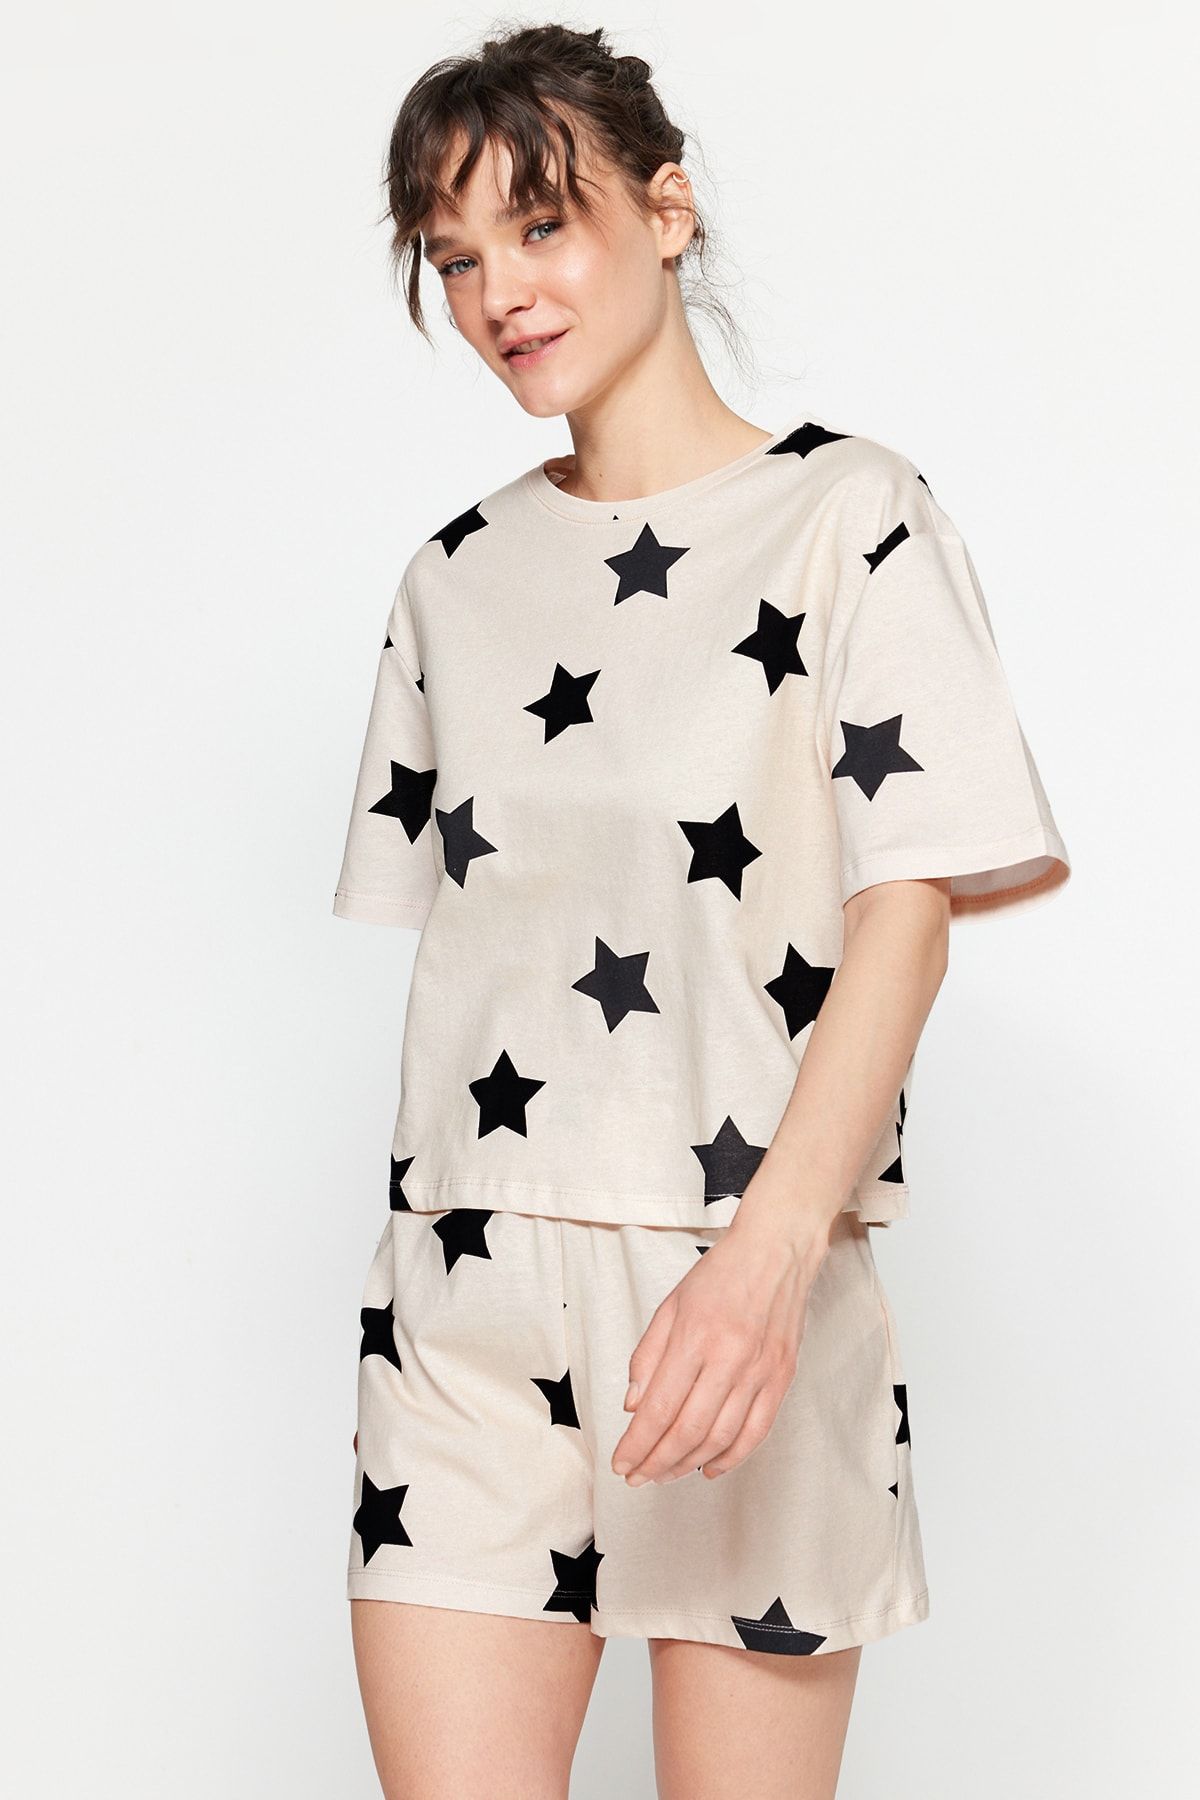 TRENDYOLMİLLA Açık Pembe %100 Pamuk Yıldız Desenli Tshirt-Şort Örme Pijama Takımı THMSS22PT0501